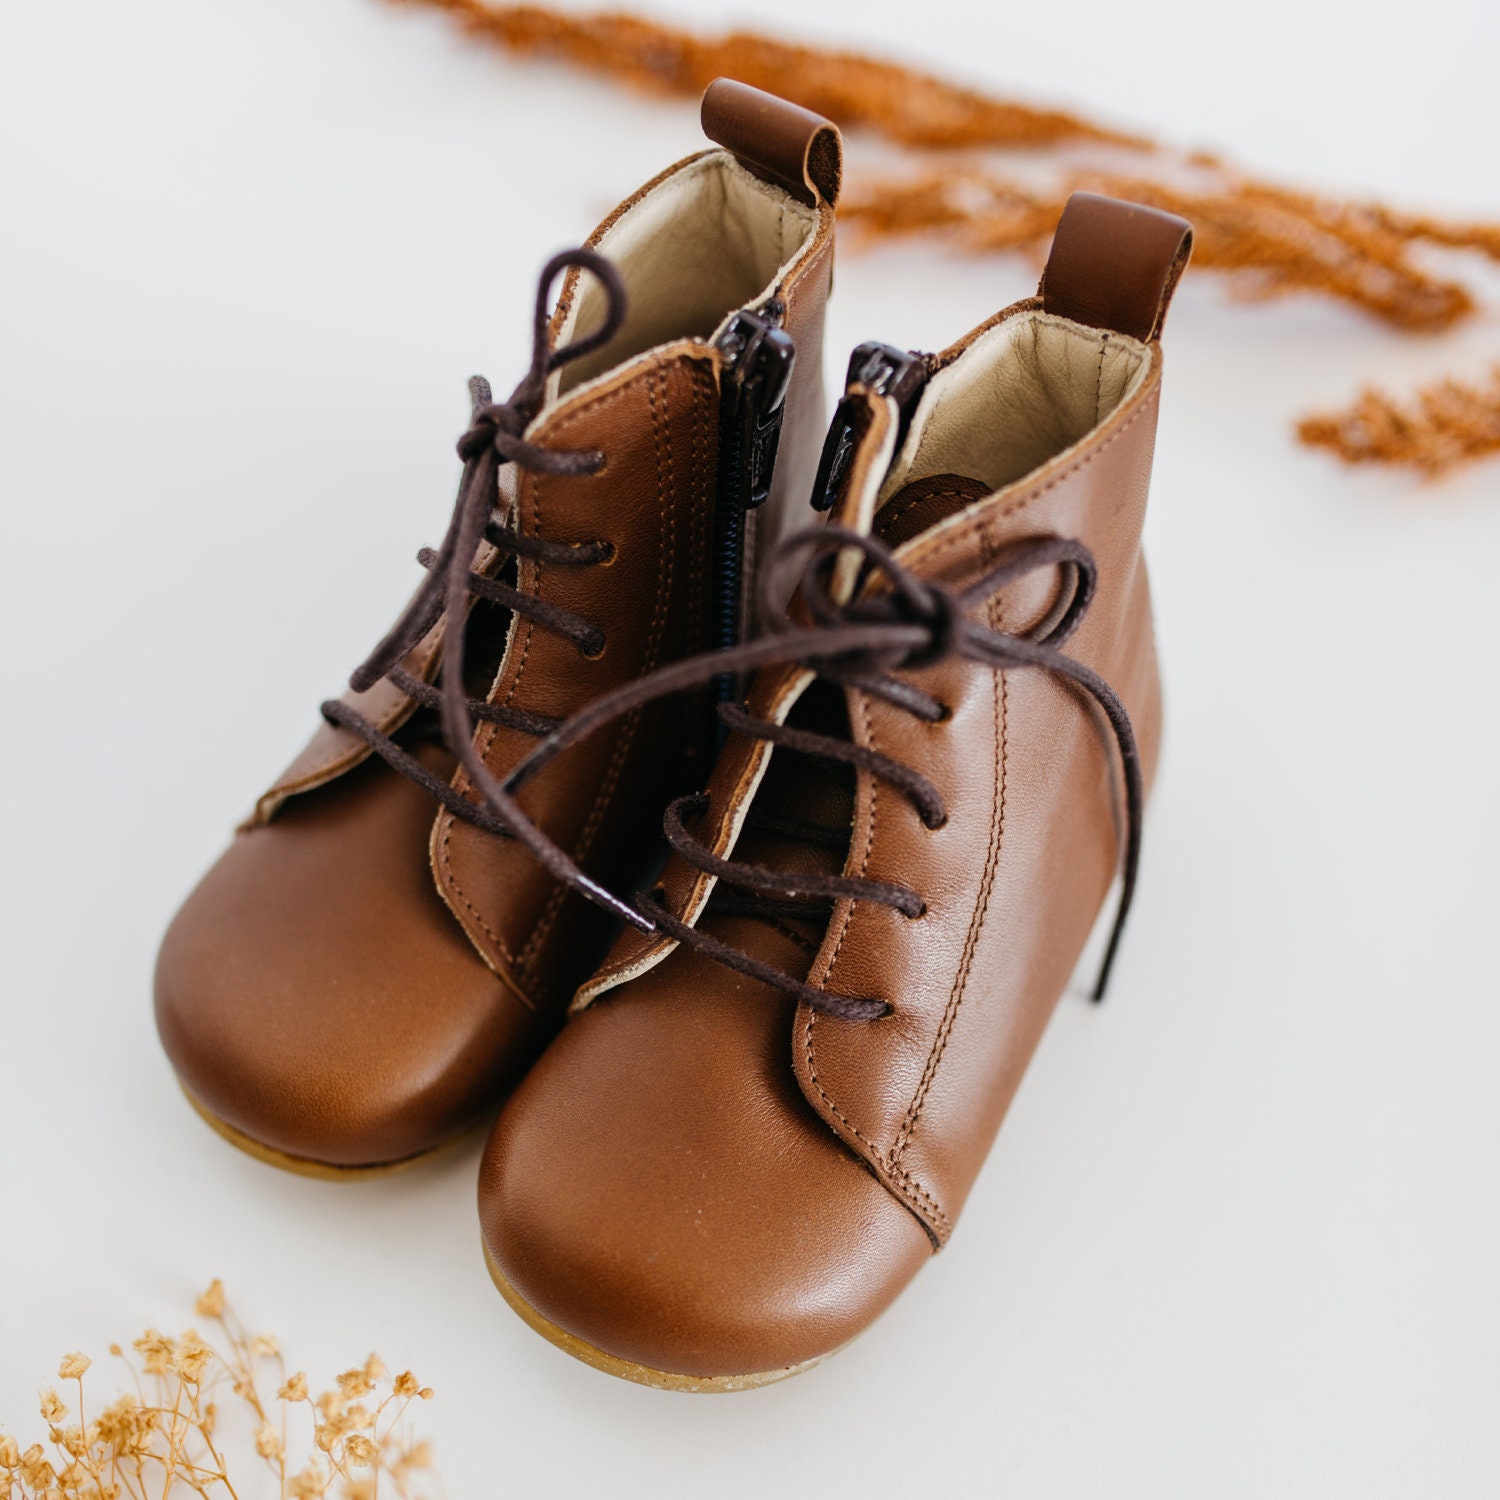 Children Peas Shoes Boy's Leather Newborn Flats Toddler Wild Slip